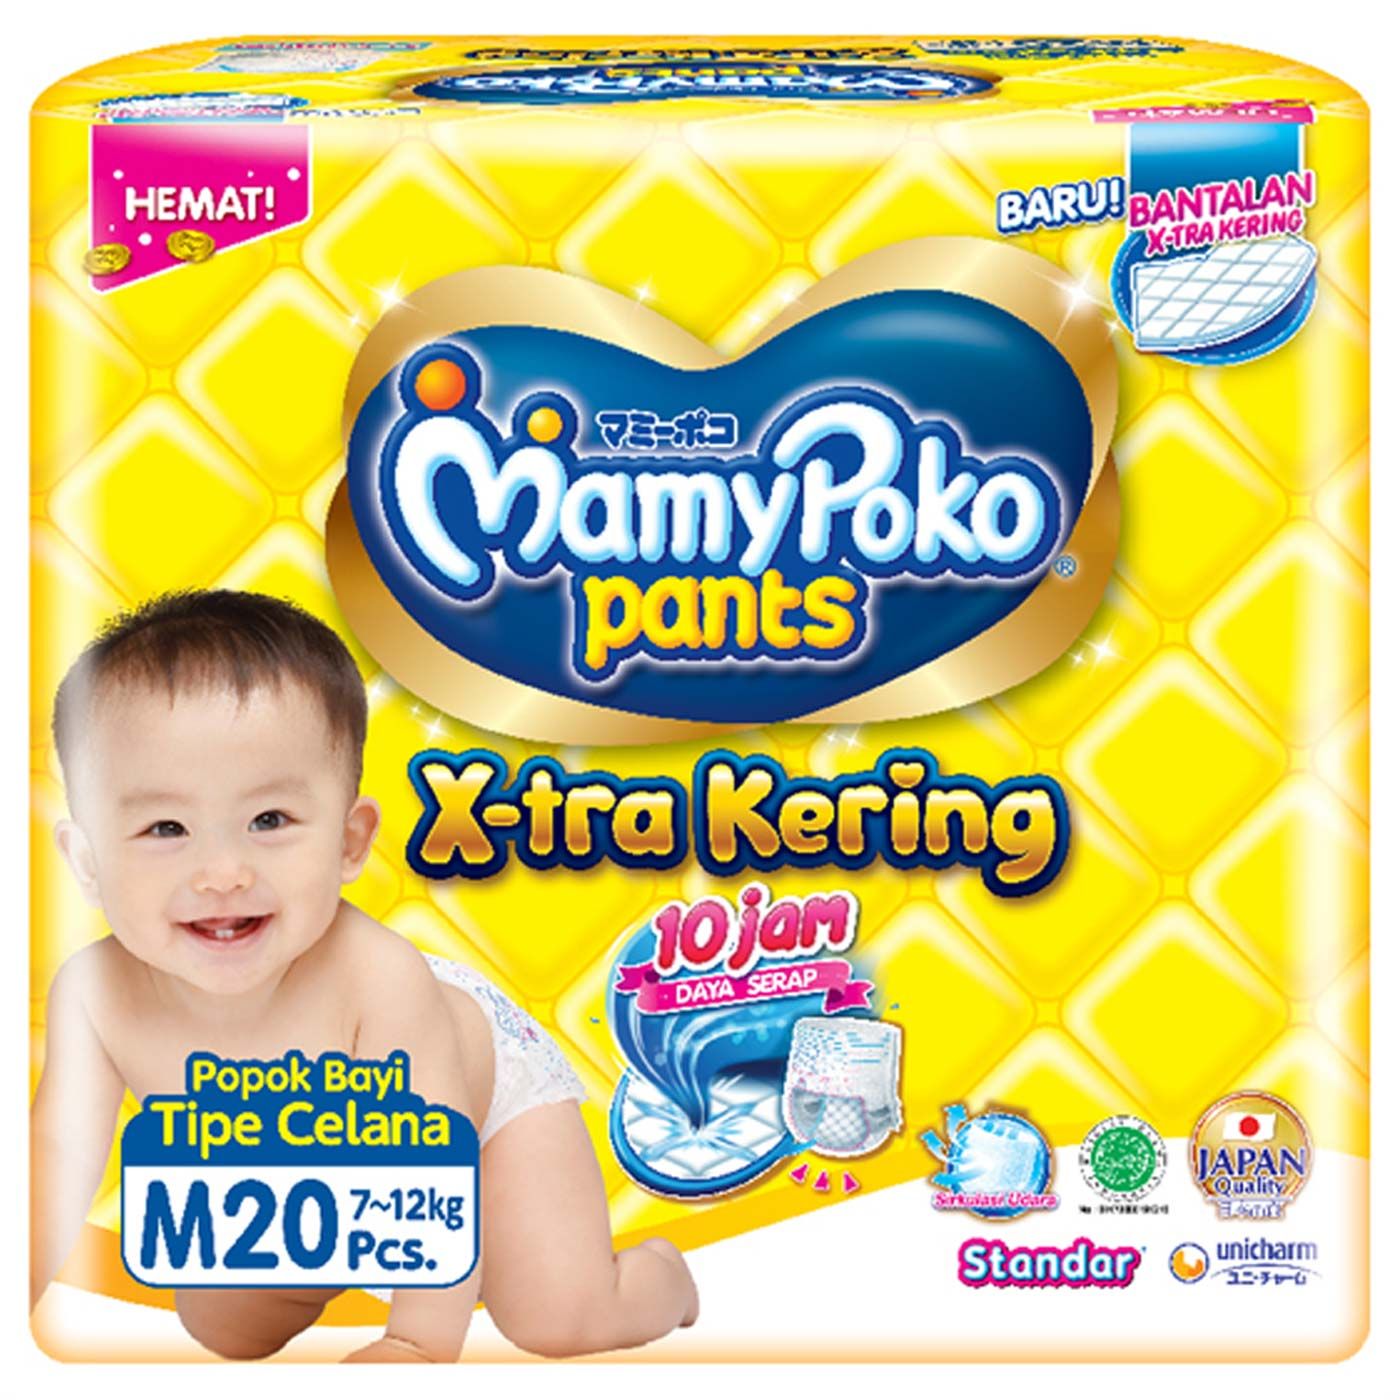 Mamypoko Pants Standar Popok Bayi M 20 - 1